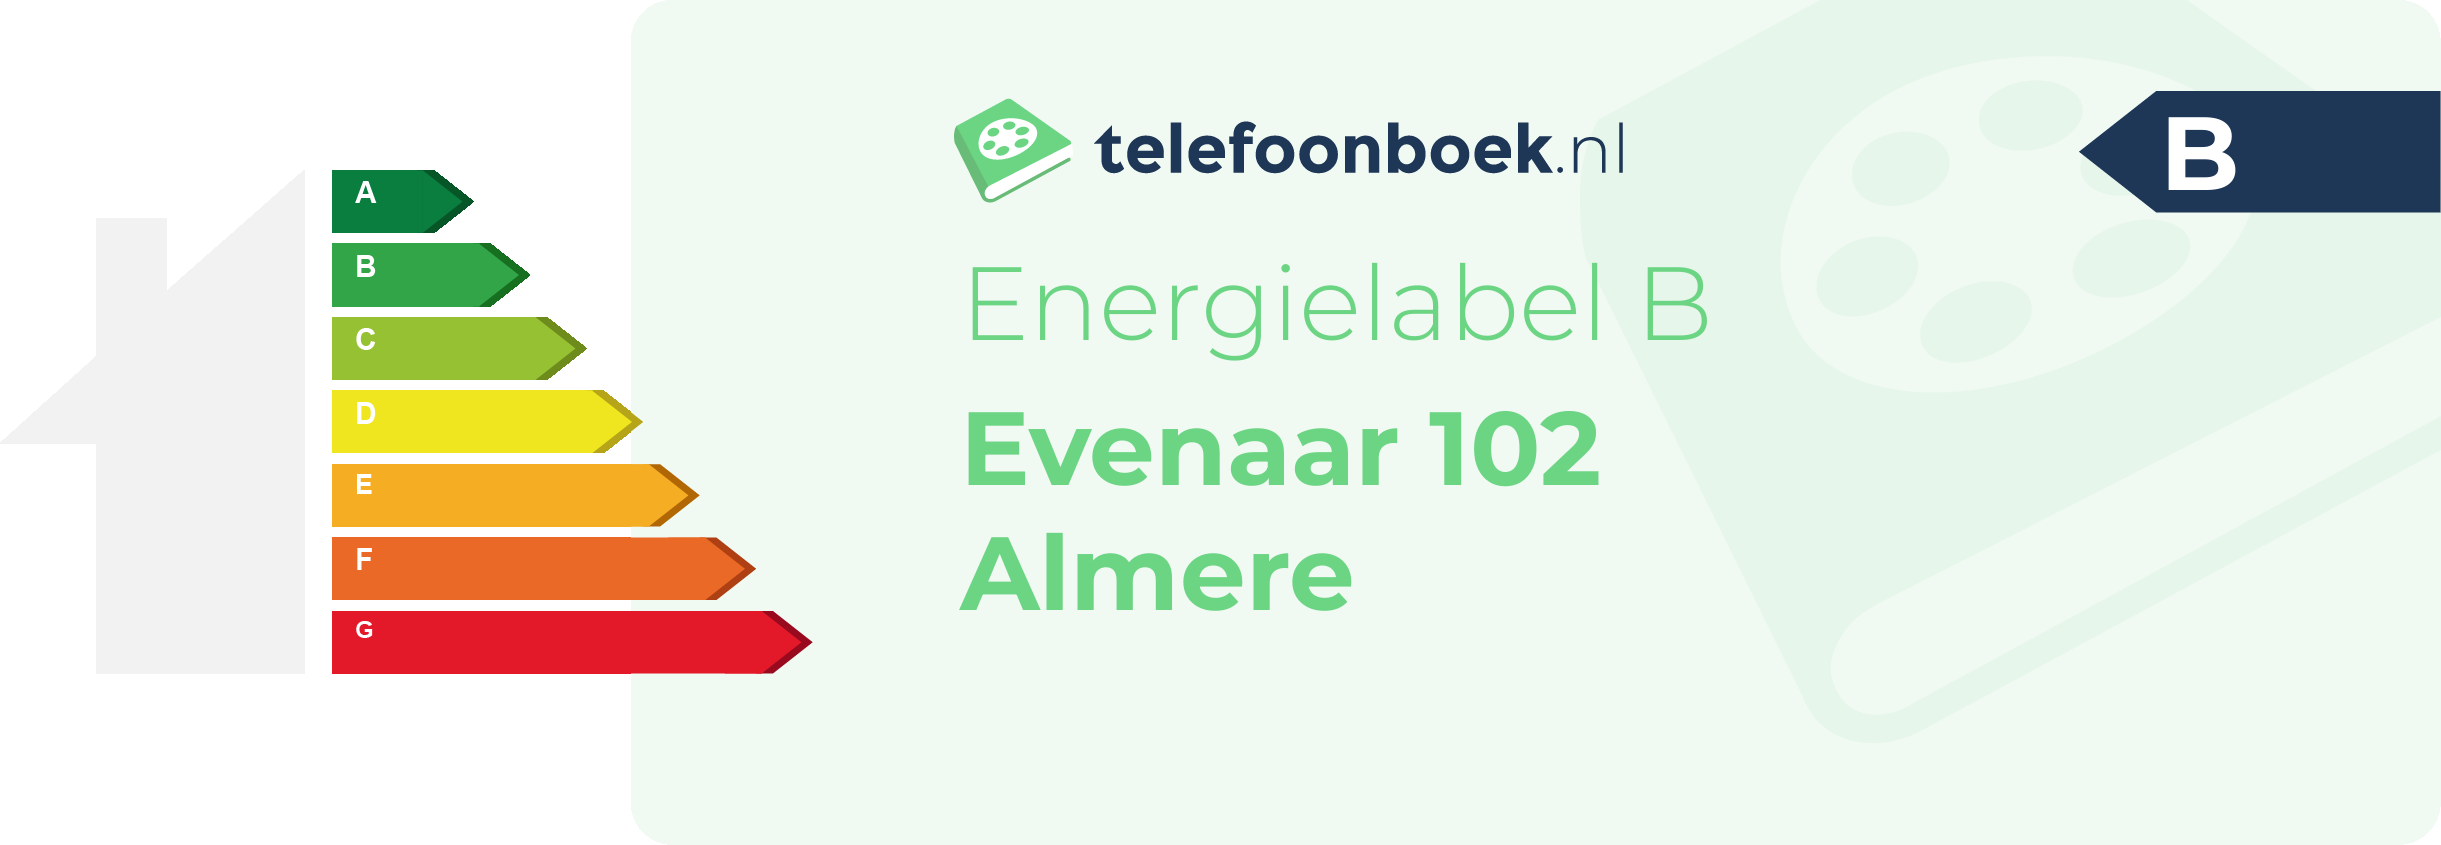 Energielabel Evenaar 102 Almere